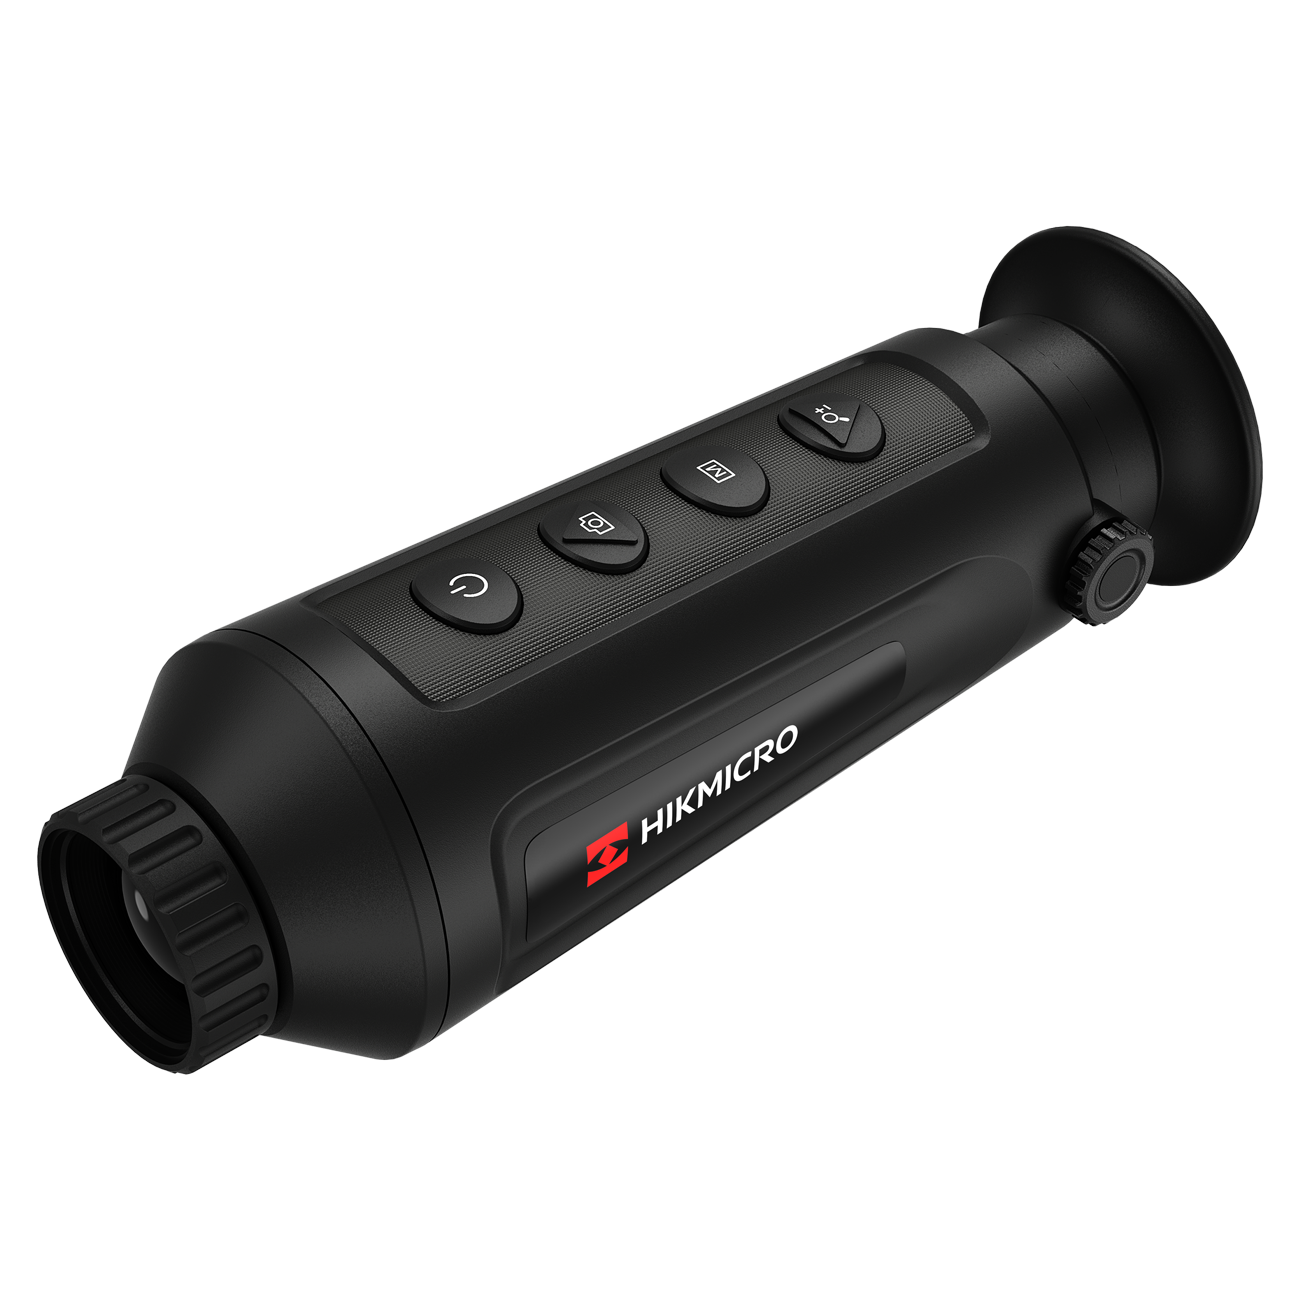 Es handelt sich hier um Hikmicro LYNX PRO LH25 Wärmebildkamera für die Jagd.